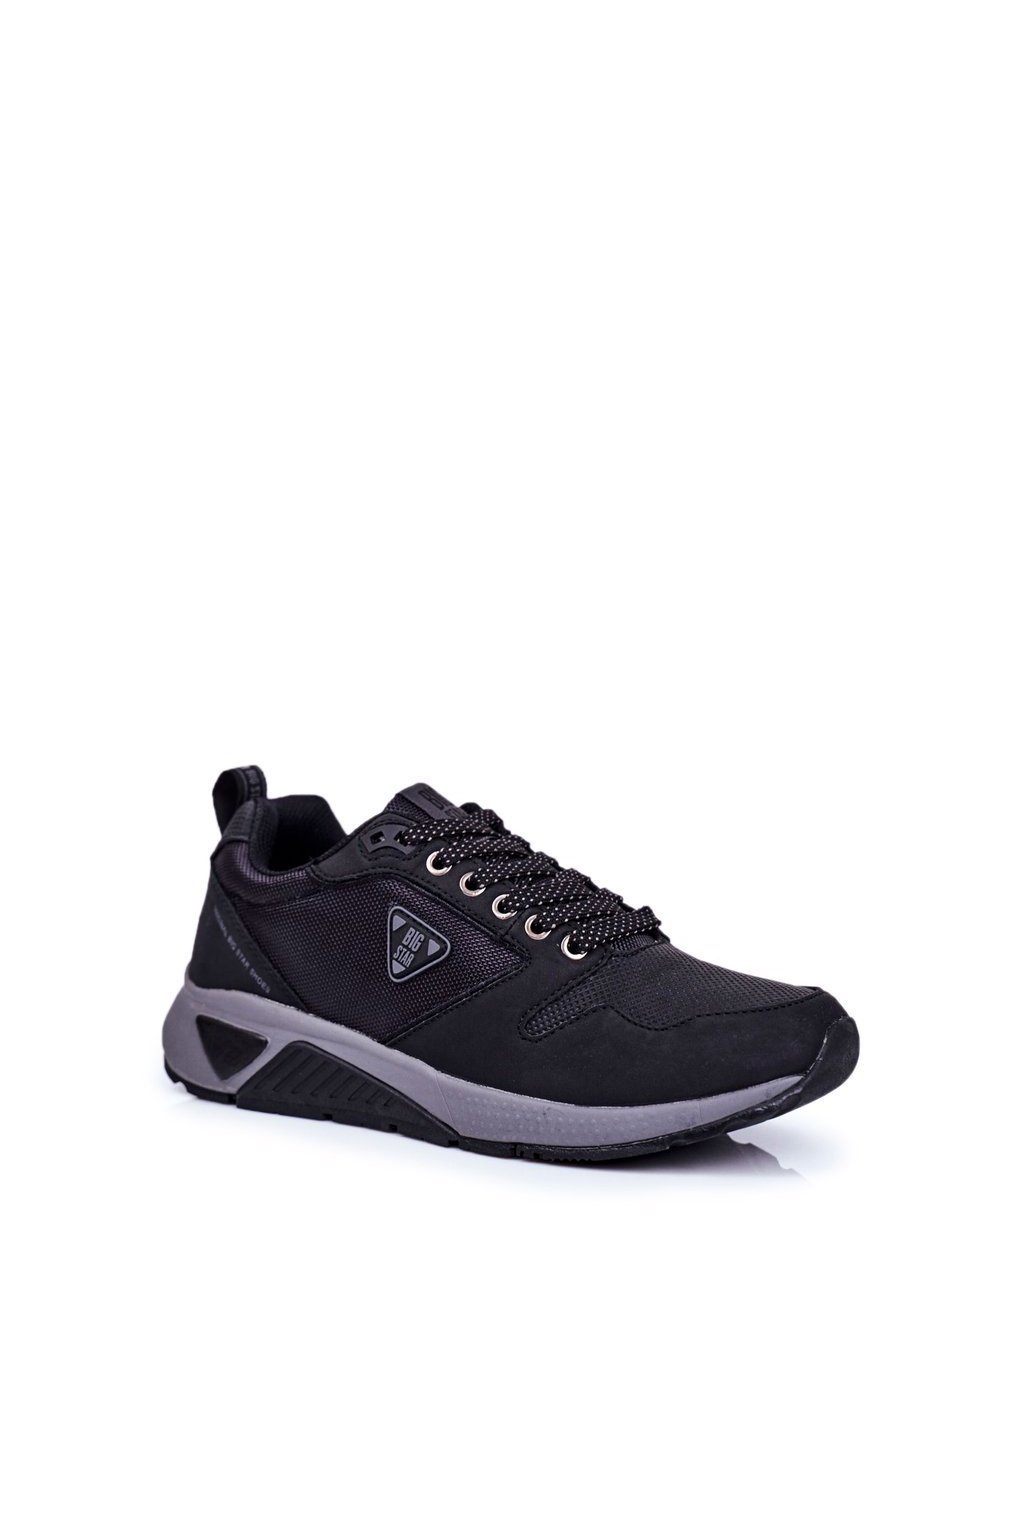 Čierna obuv kód topánok GG174350 BLK